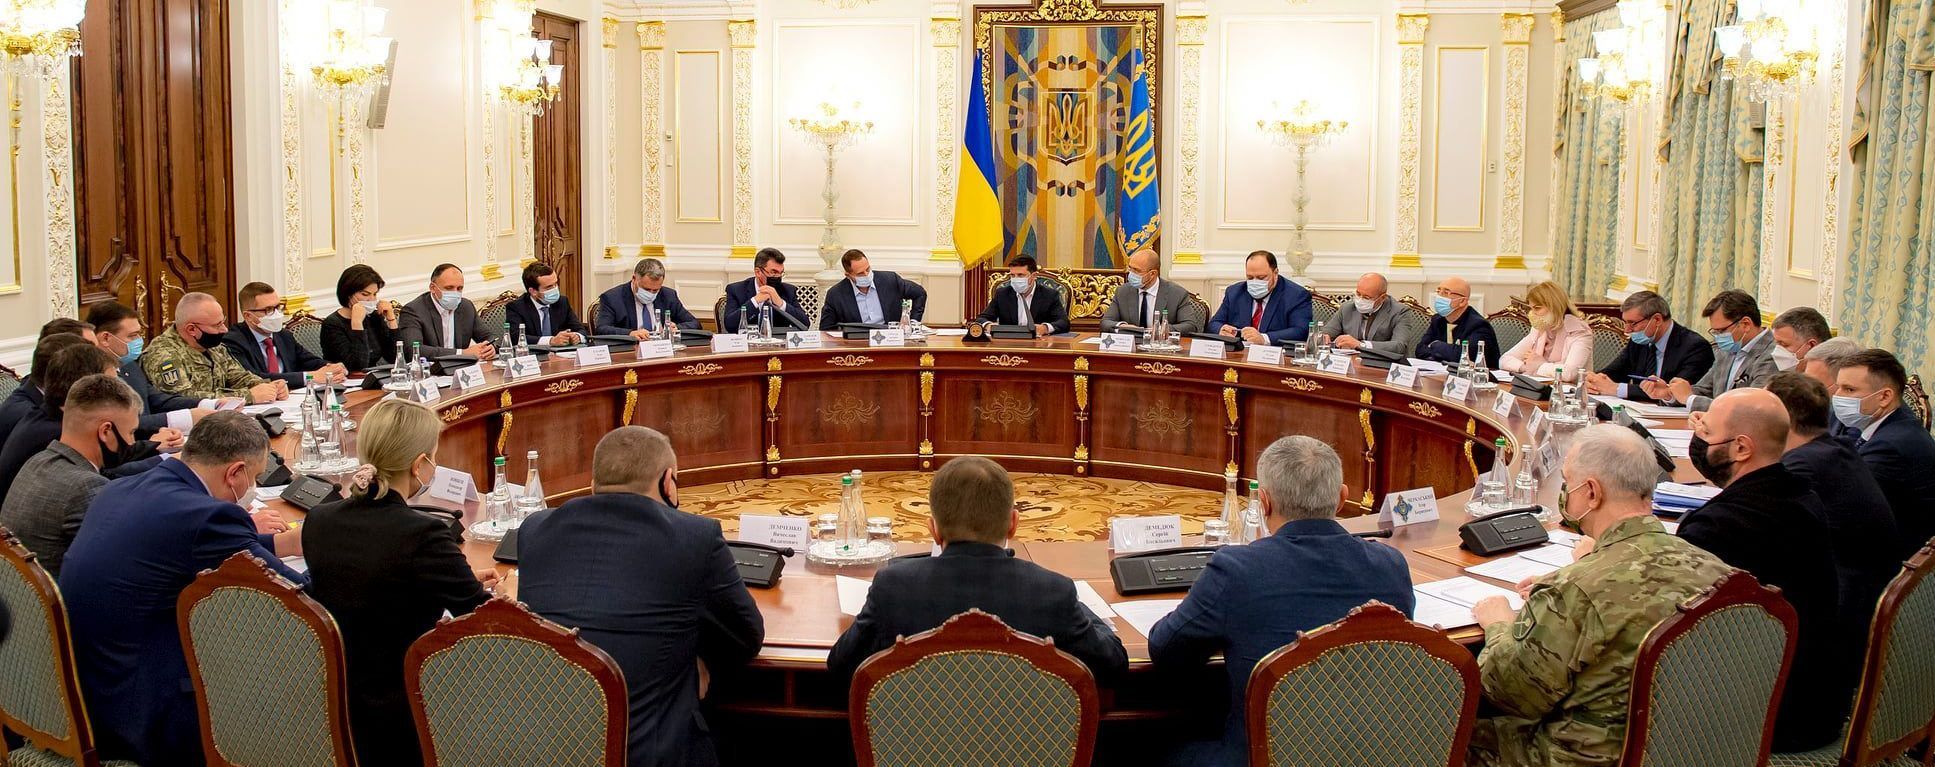 СНБО ввела максимальный объем санкций против Януковича, Азарова и других экс-чиновников: перечень